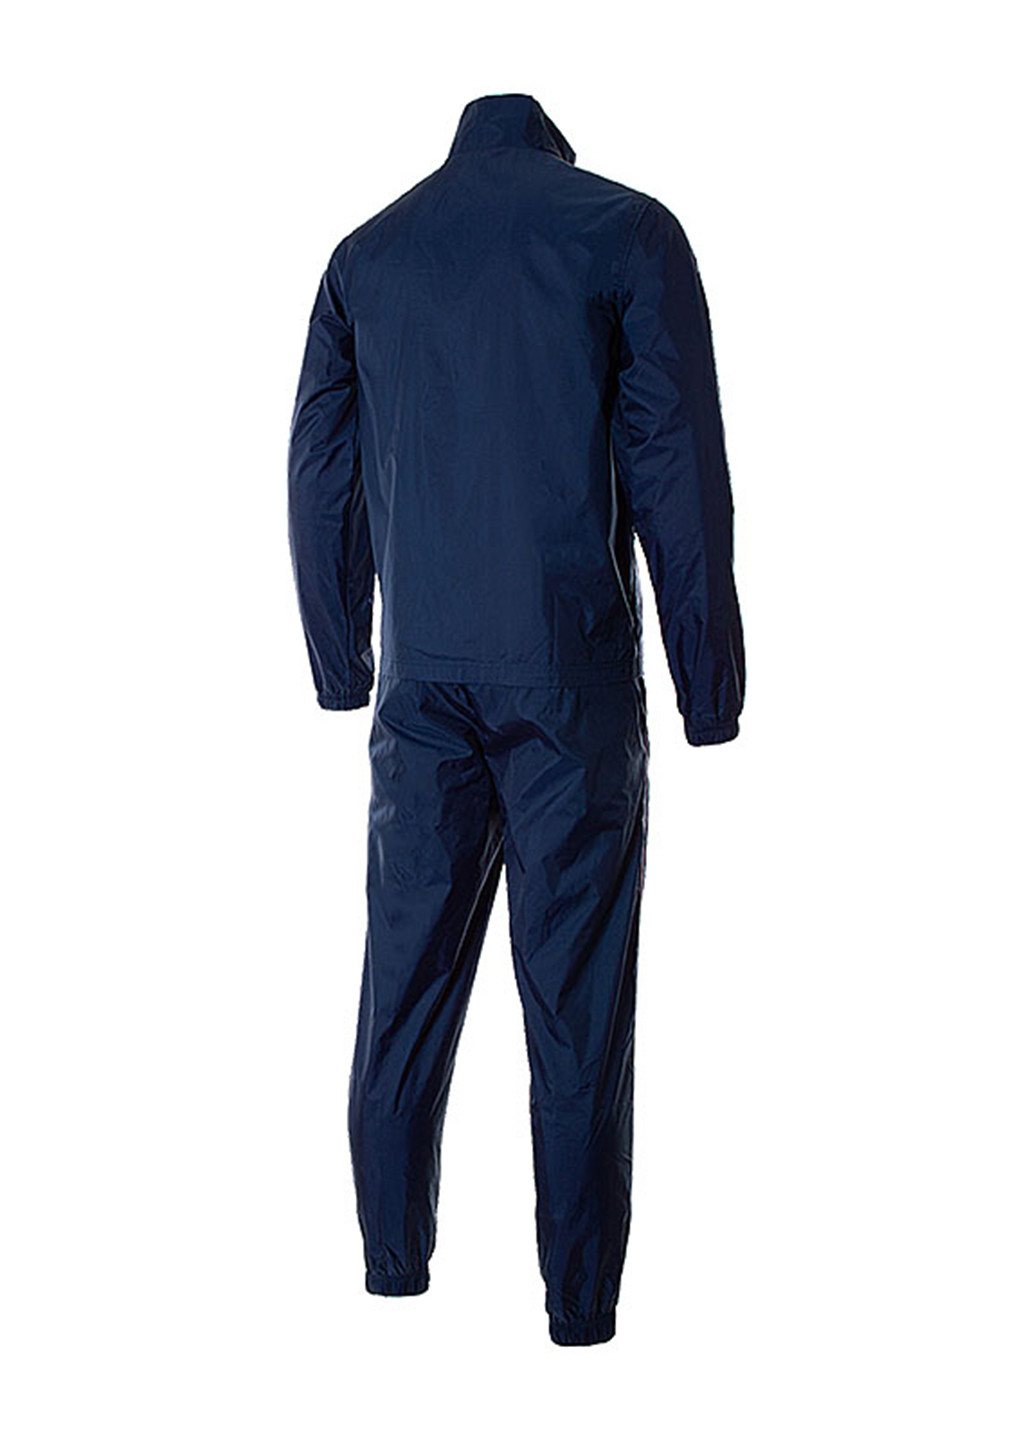 Темно-синий демисезонный костюм (олимпийка, брюки) брючный Nike M NSW SCE TRK SUIT WVN BASIC